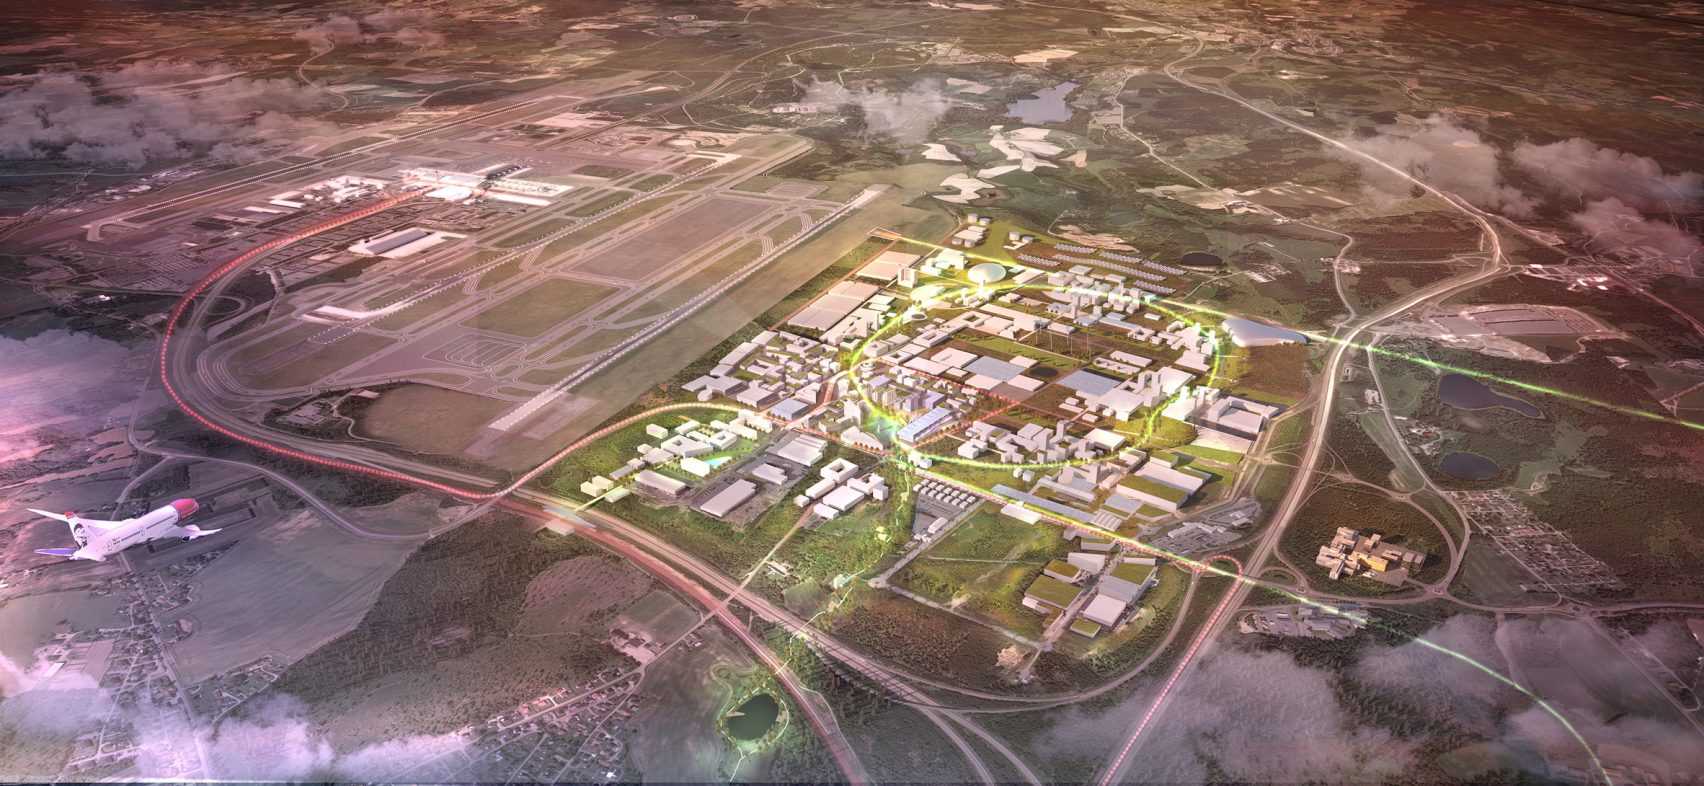  فرودگاه اسلو شهری پایدار و آینده خواهد داشت